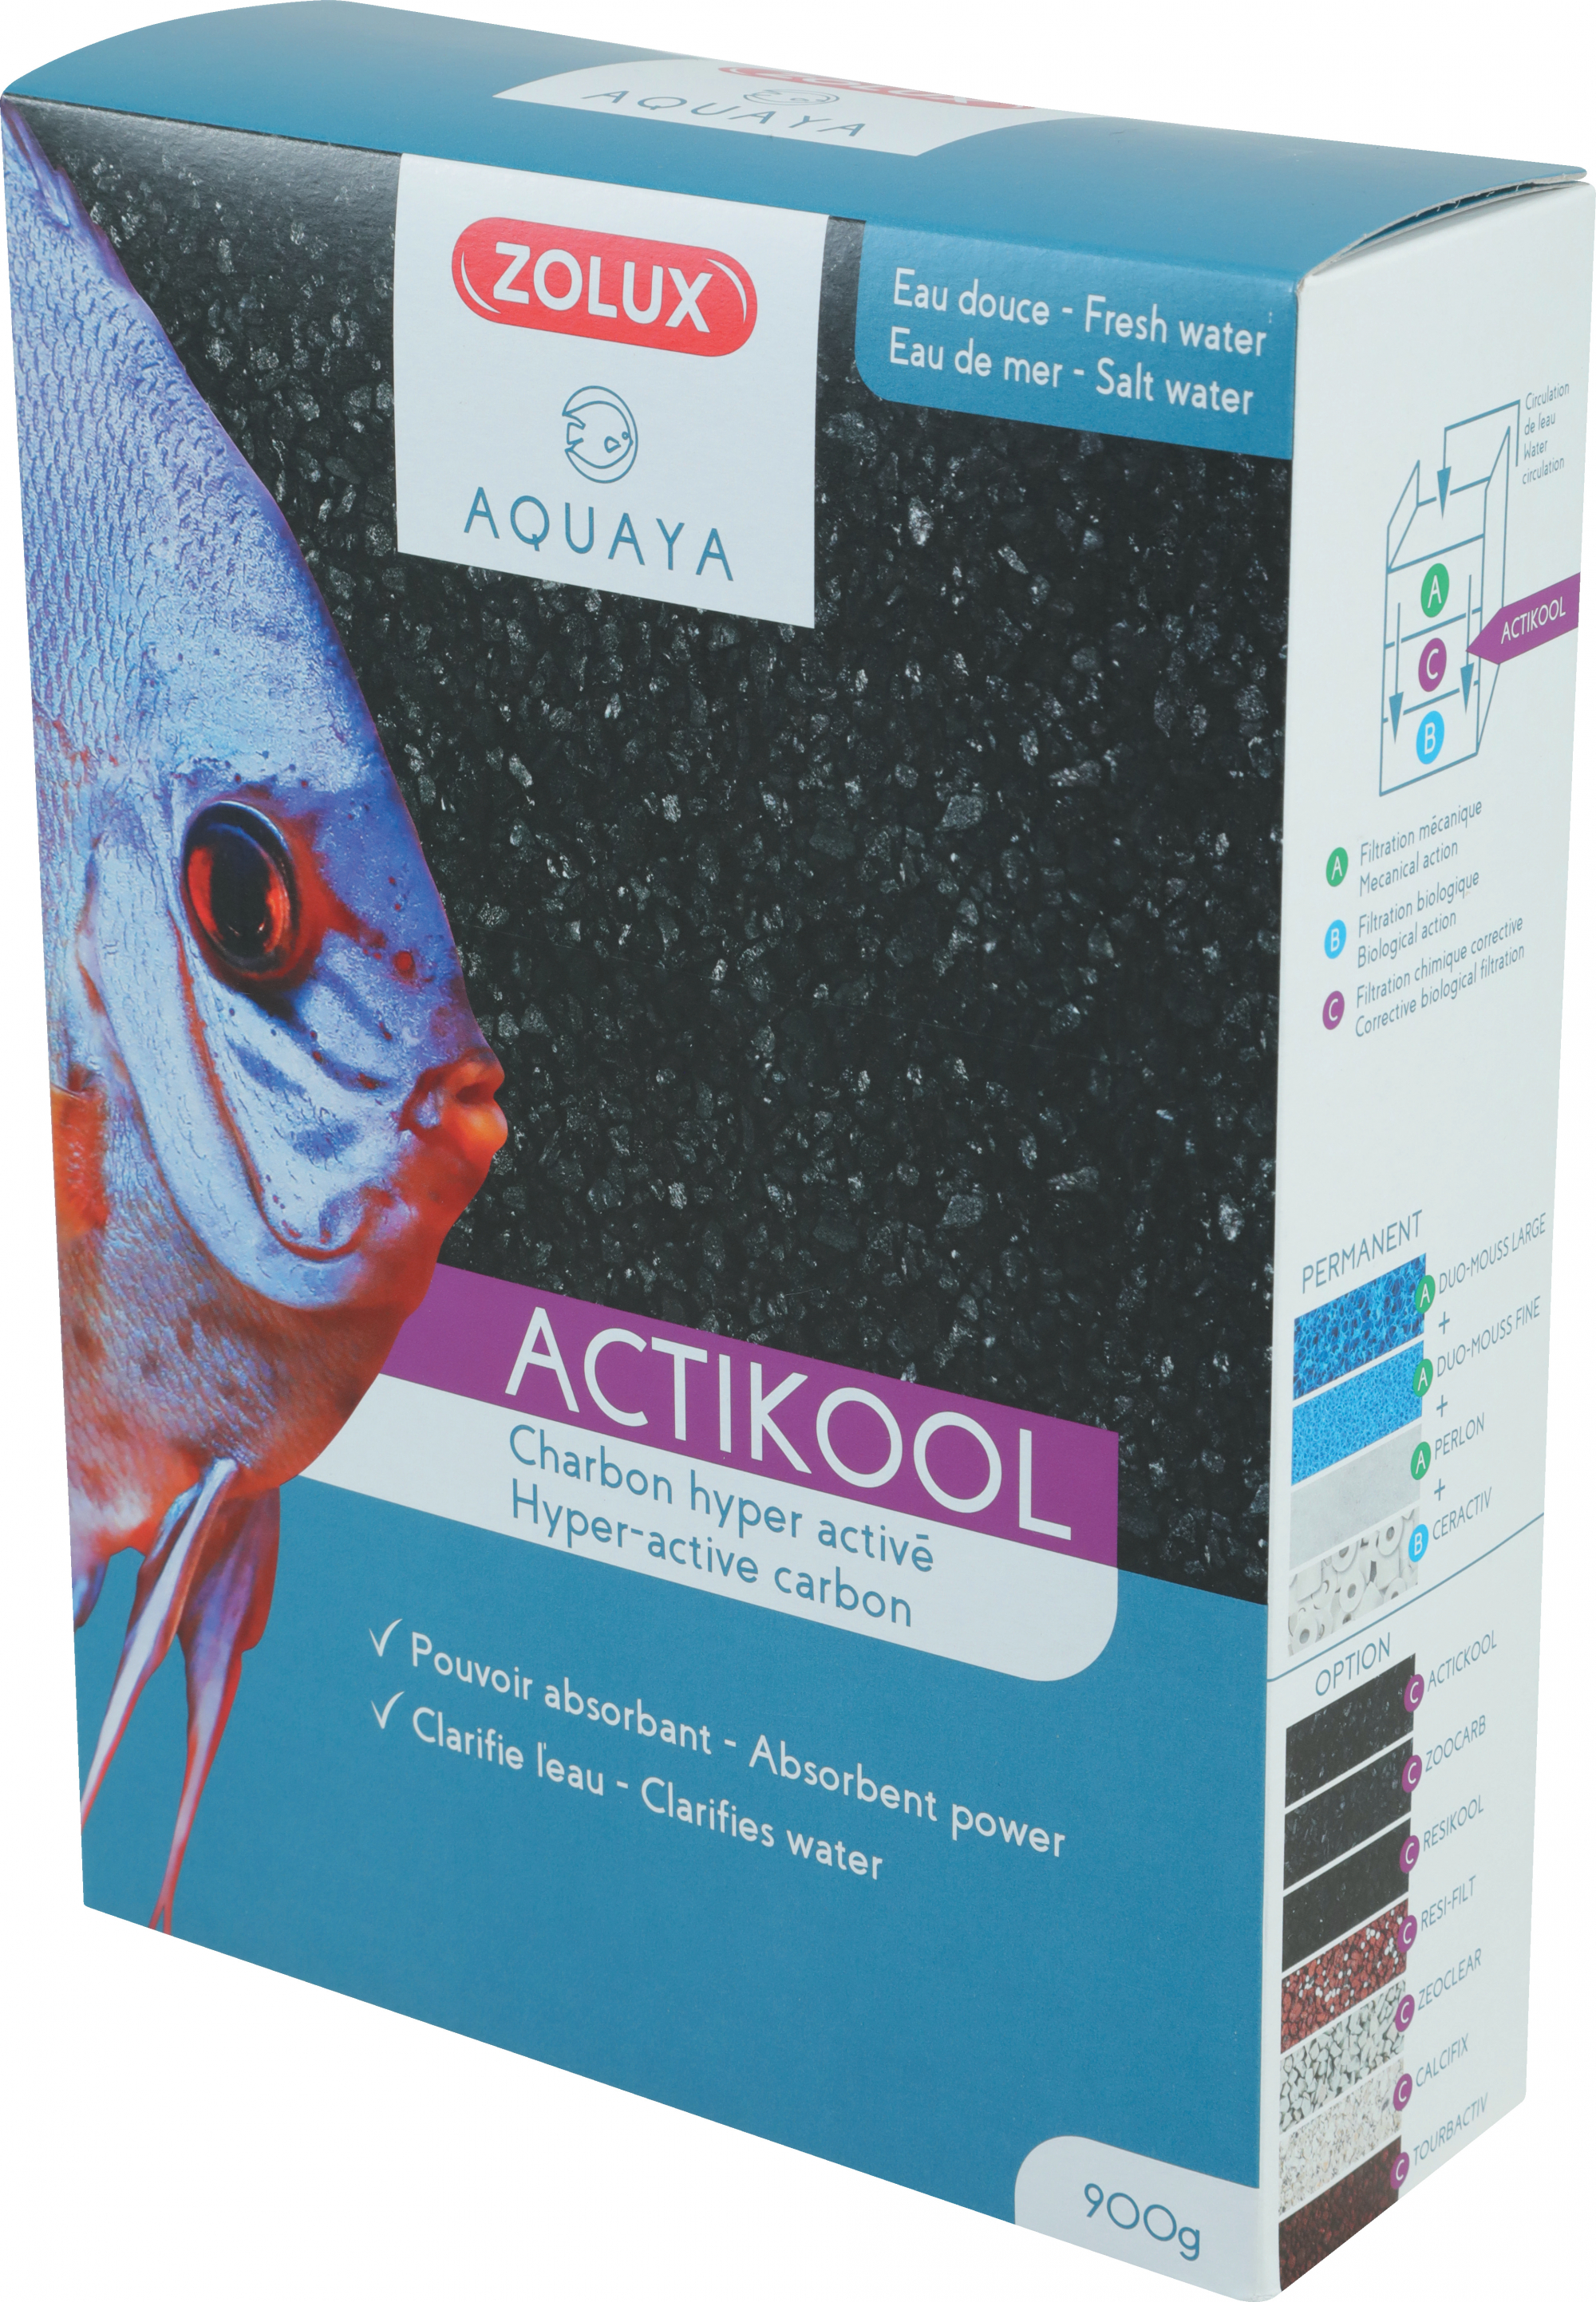 Carbone superattivo per acquario ACTIKOOL 2